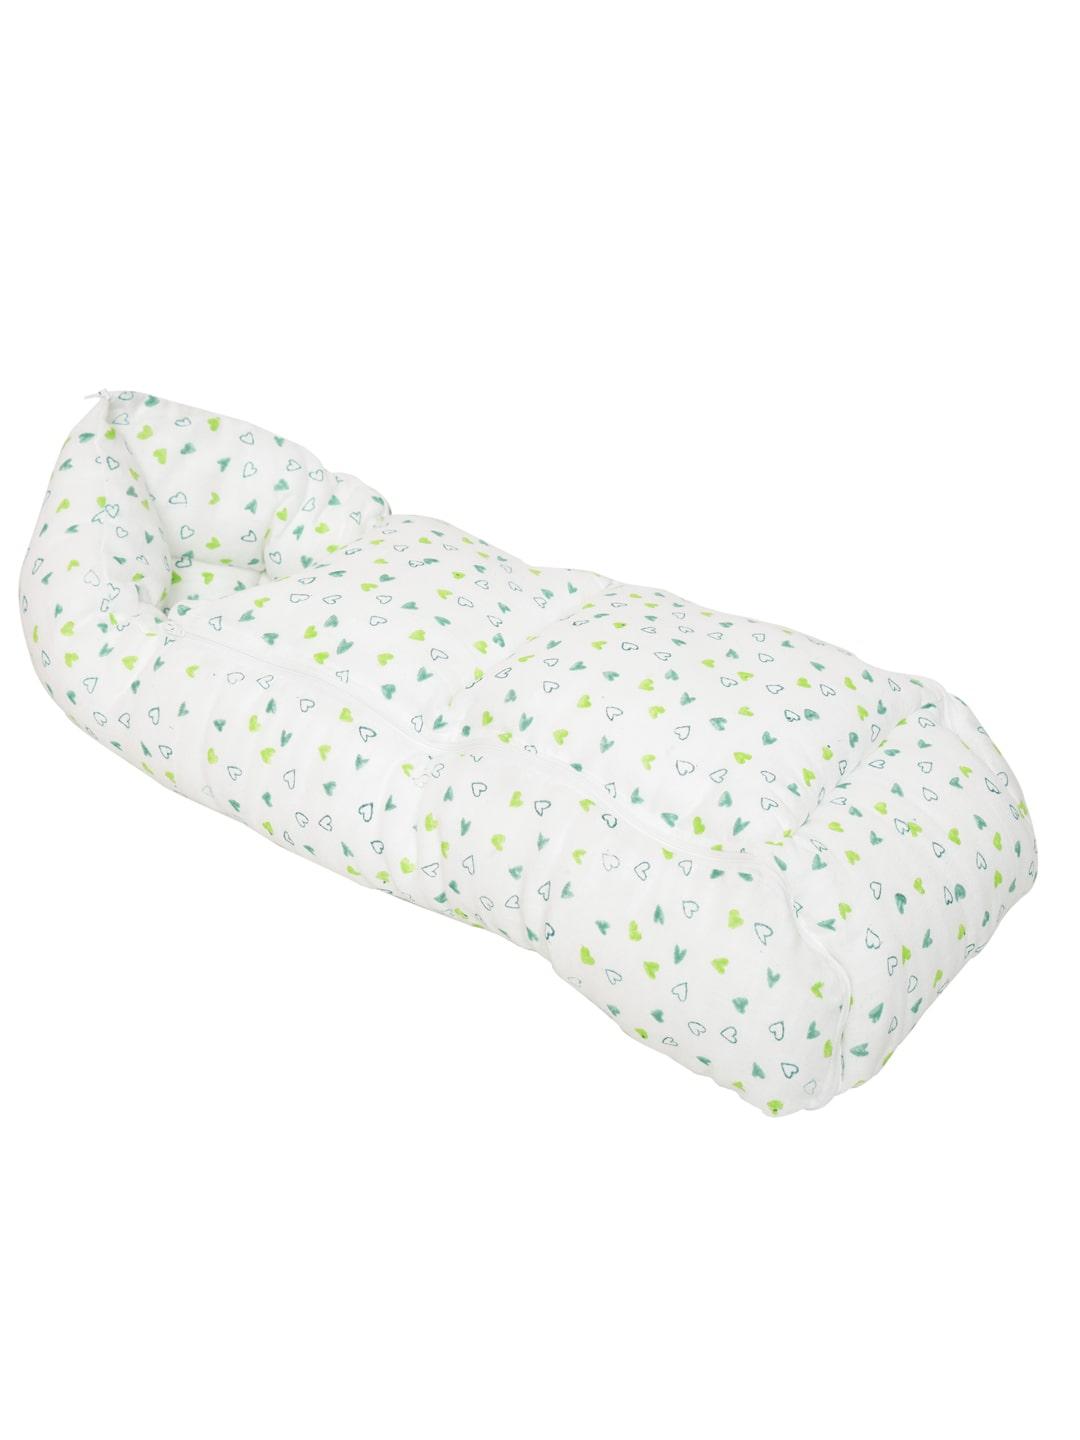 Baby Organic Cotton Muslin Sleeping cum carrying Nest Bag- Green Heart- 0-3 Months